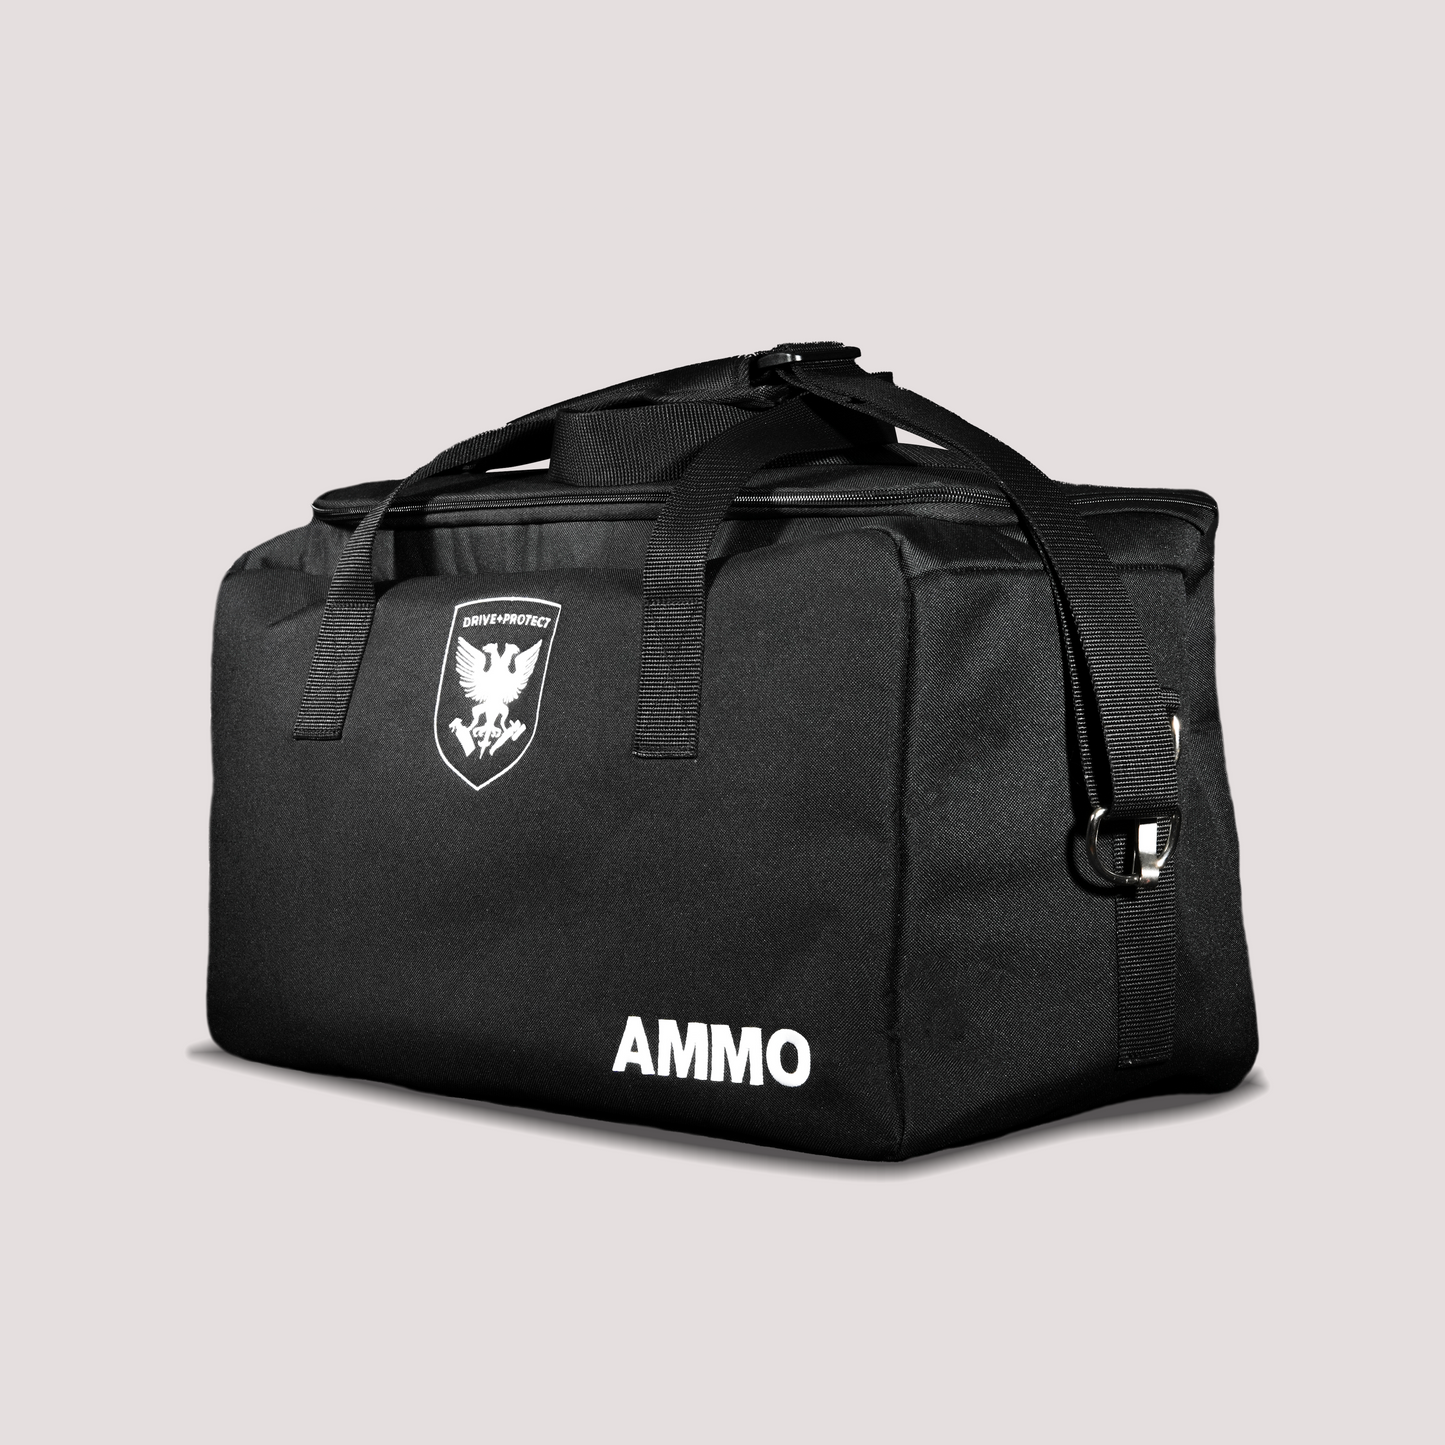 AMMO Polisher Bag